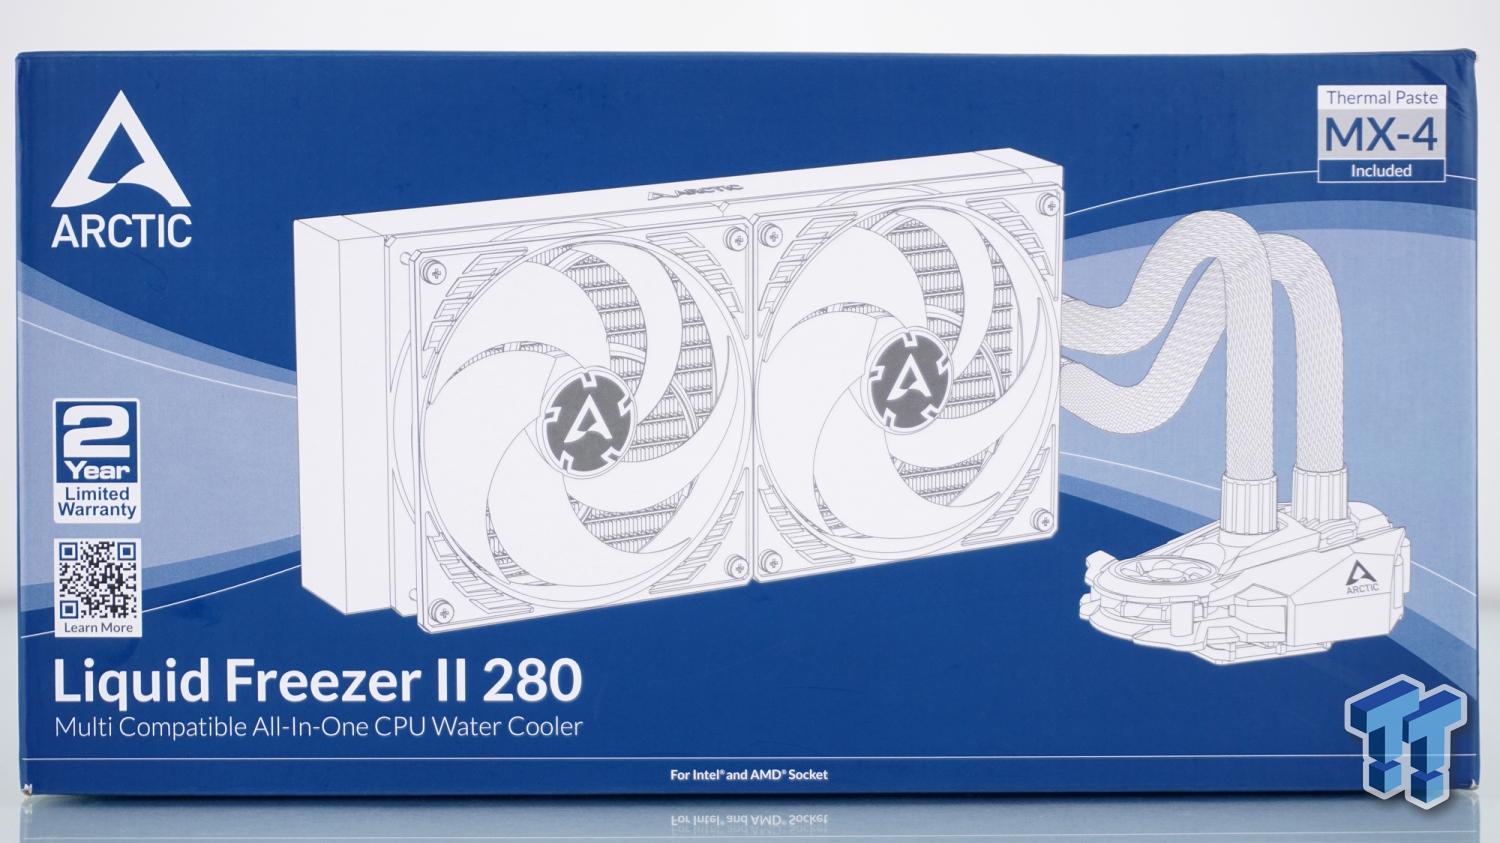 ARCTIC Liquid Freezer II 240 aRGB BLACK CPU Liquid Cooler –